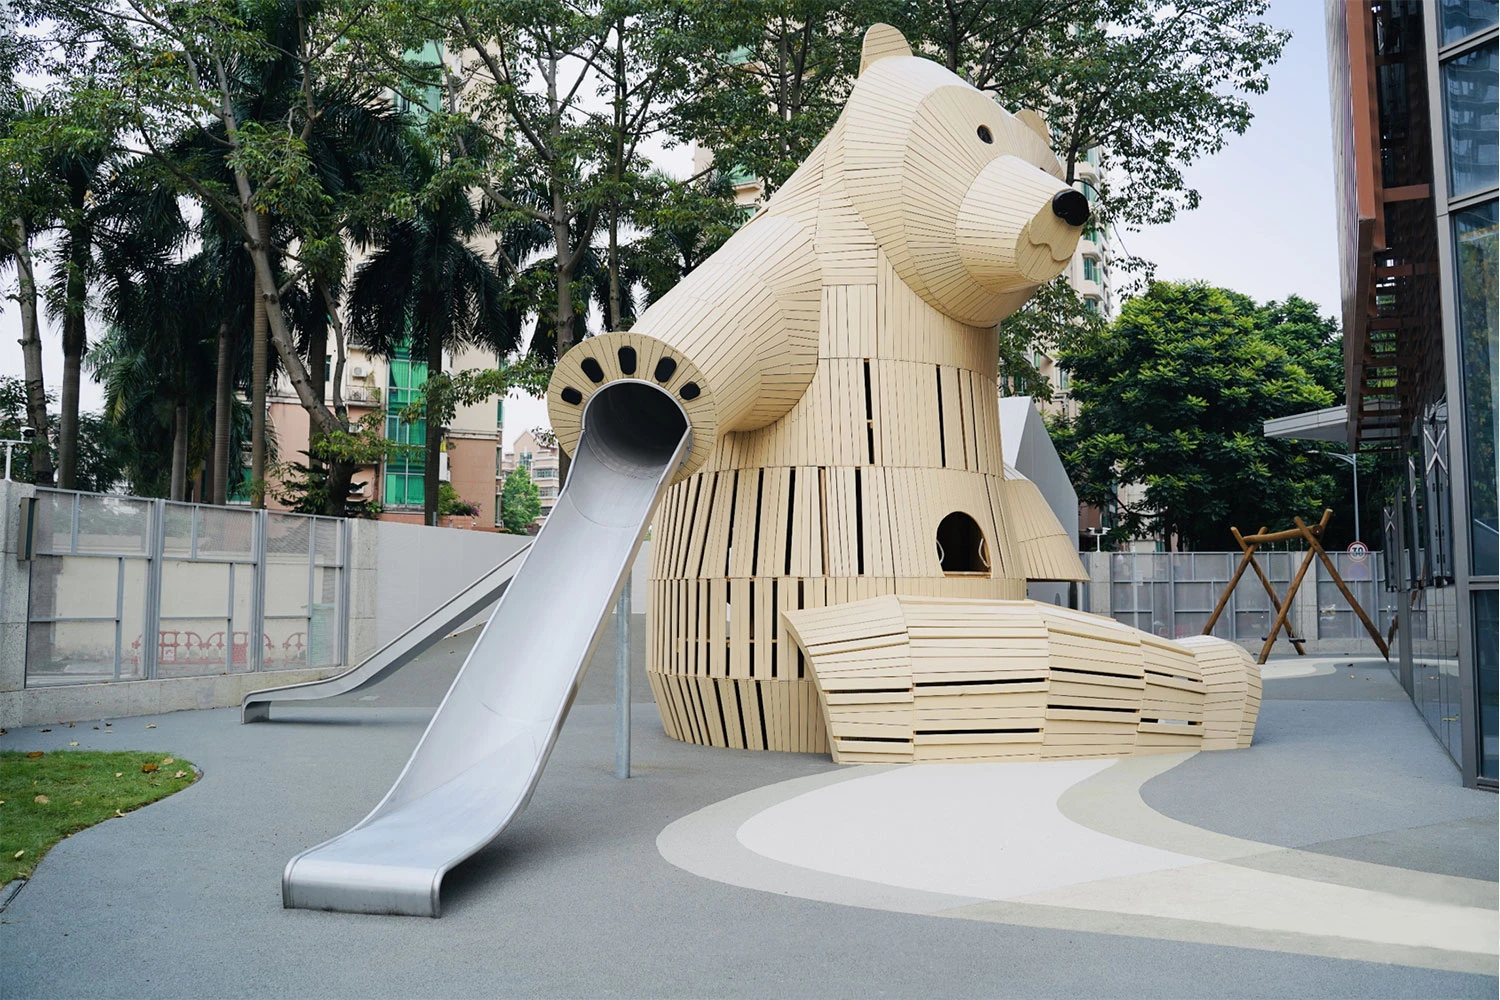 Skulptur i trä som ser ut som en stor björn på ett dagis i Kina.